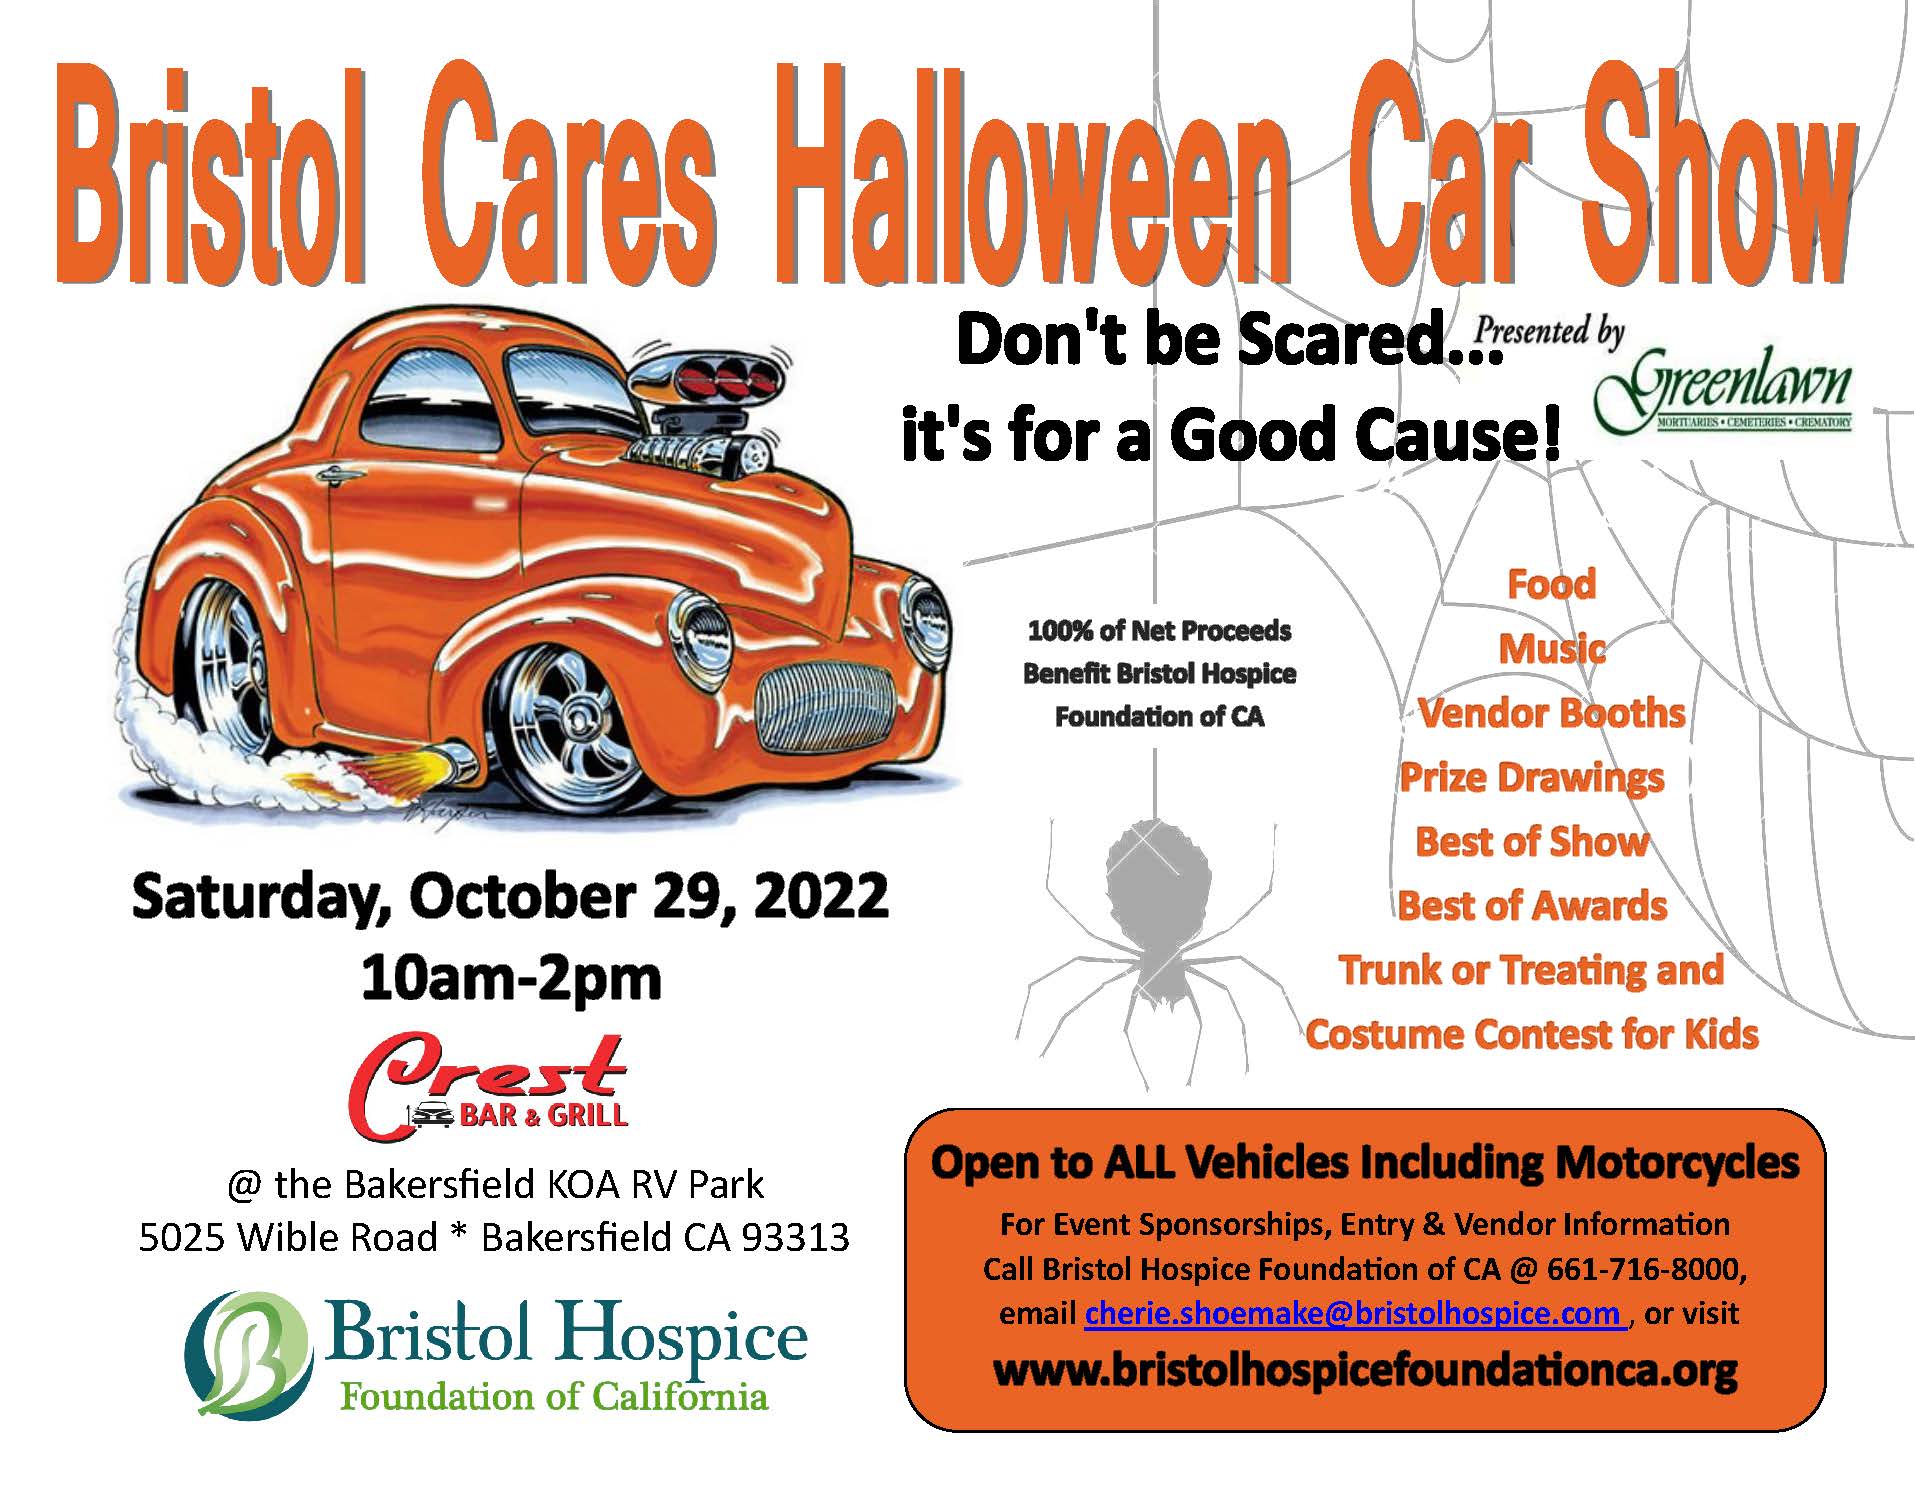 Bristol Cares Halloween Car Show